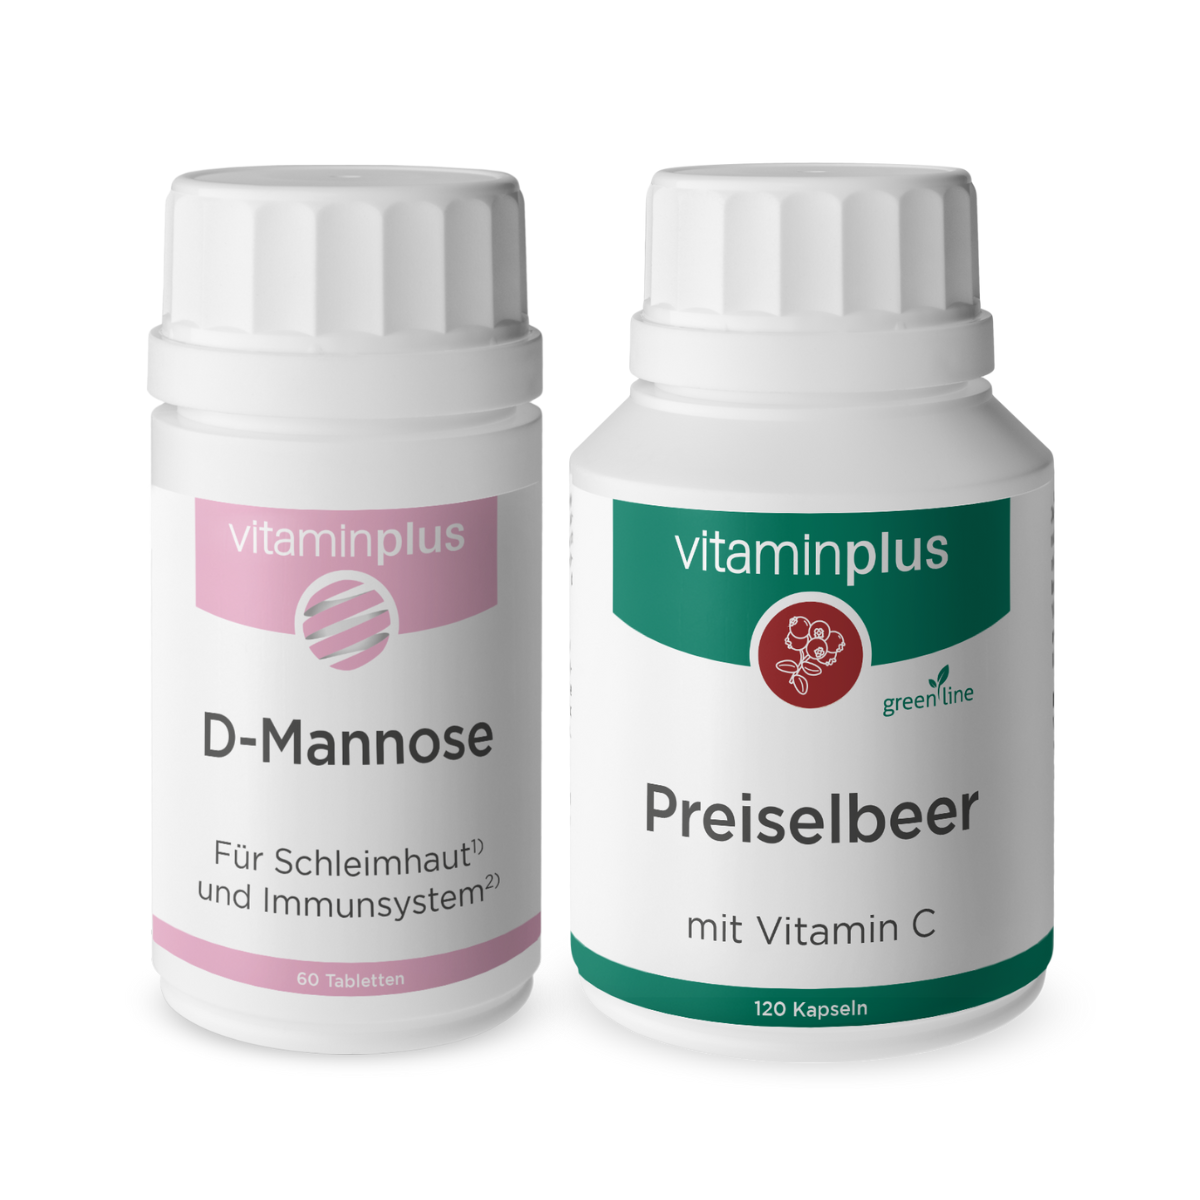 Vitaminplus D-Mannose & Preiselbeer Duo für die Blase